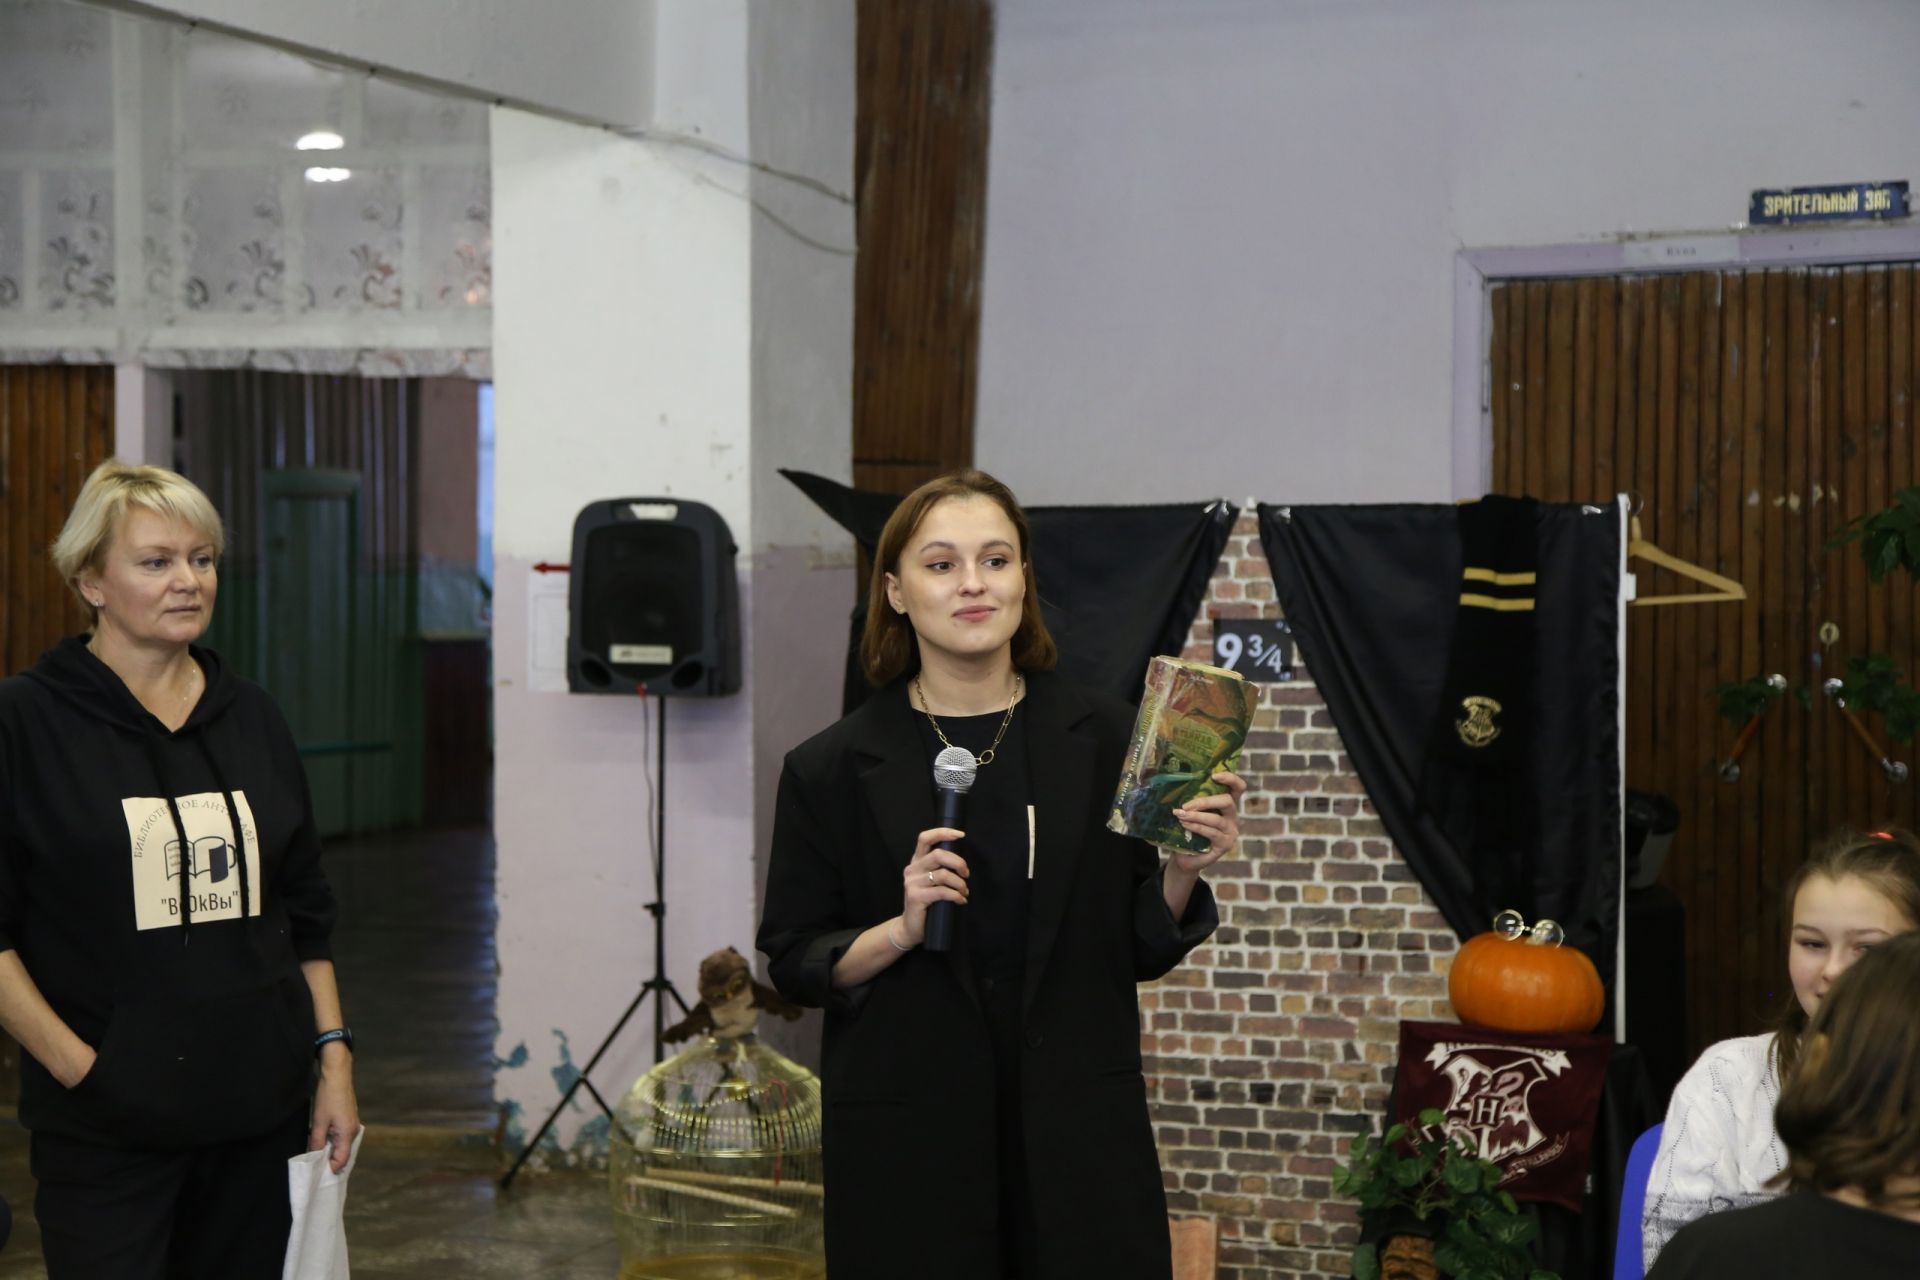 Аксубаевские школьники идут по следам Гарри Потера